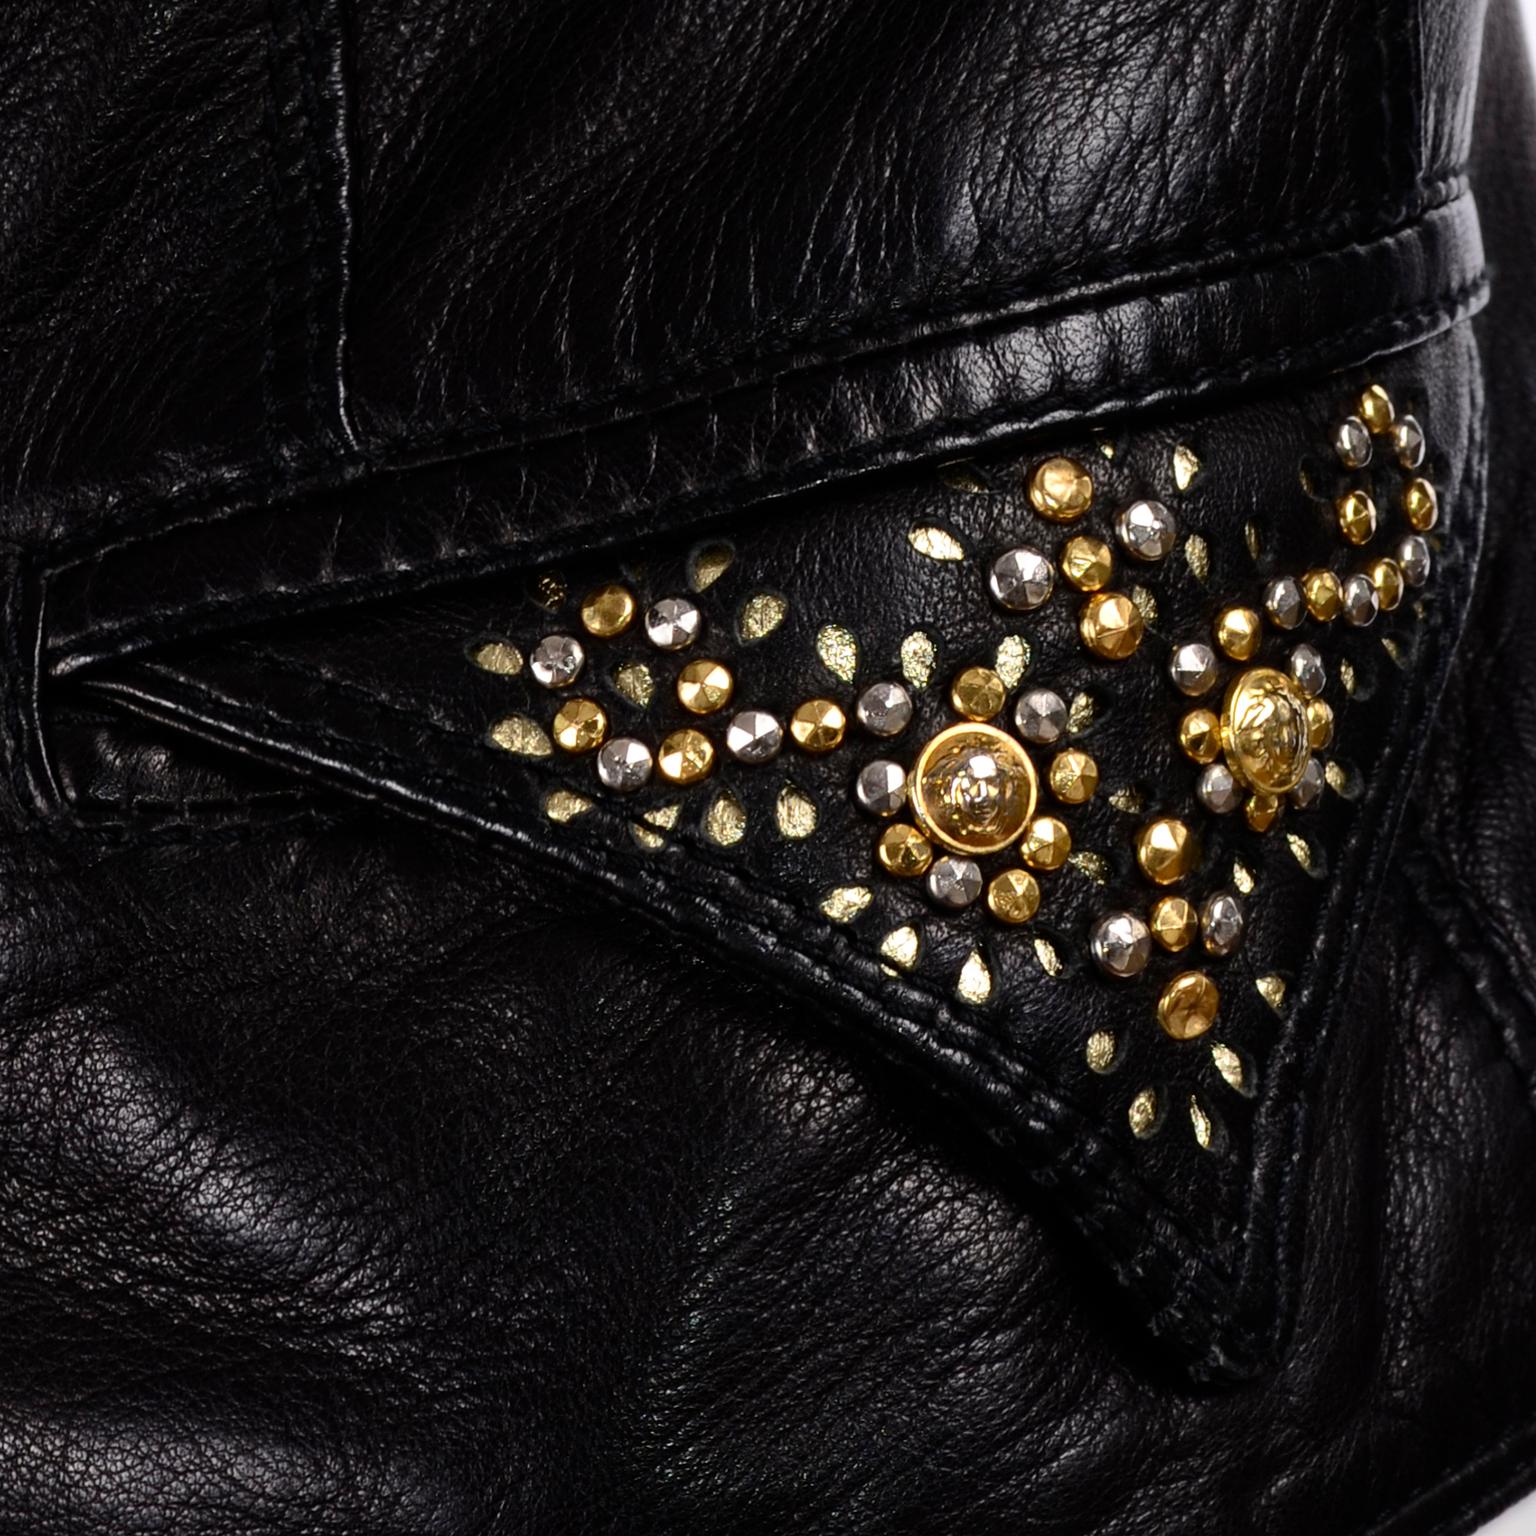 Gianni Versace Vintage Black Lambskin Leather Moto Jacket W Medusa Studs 4